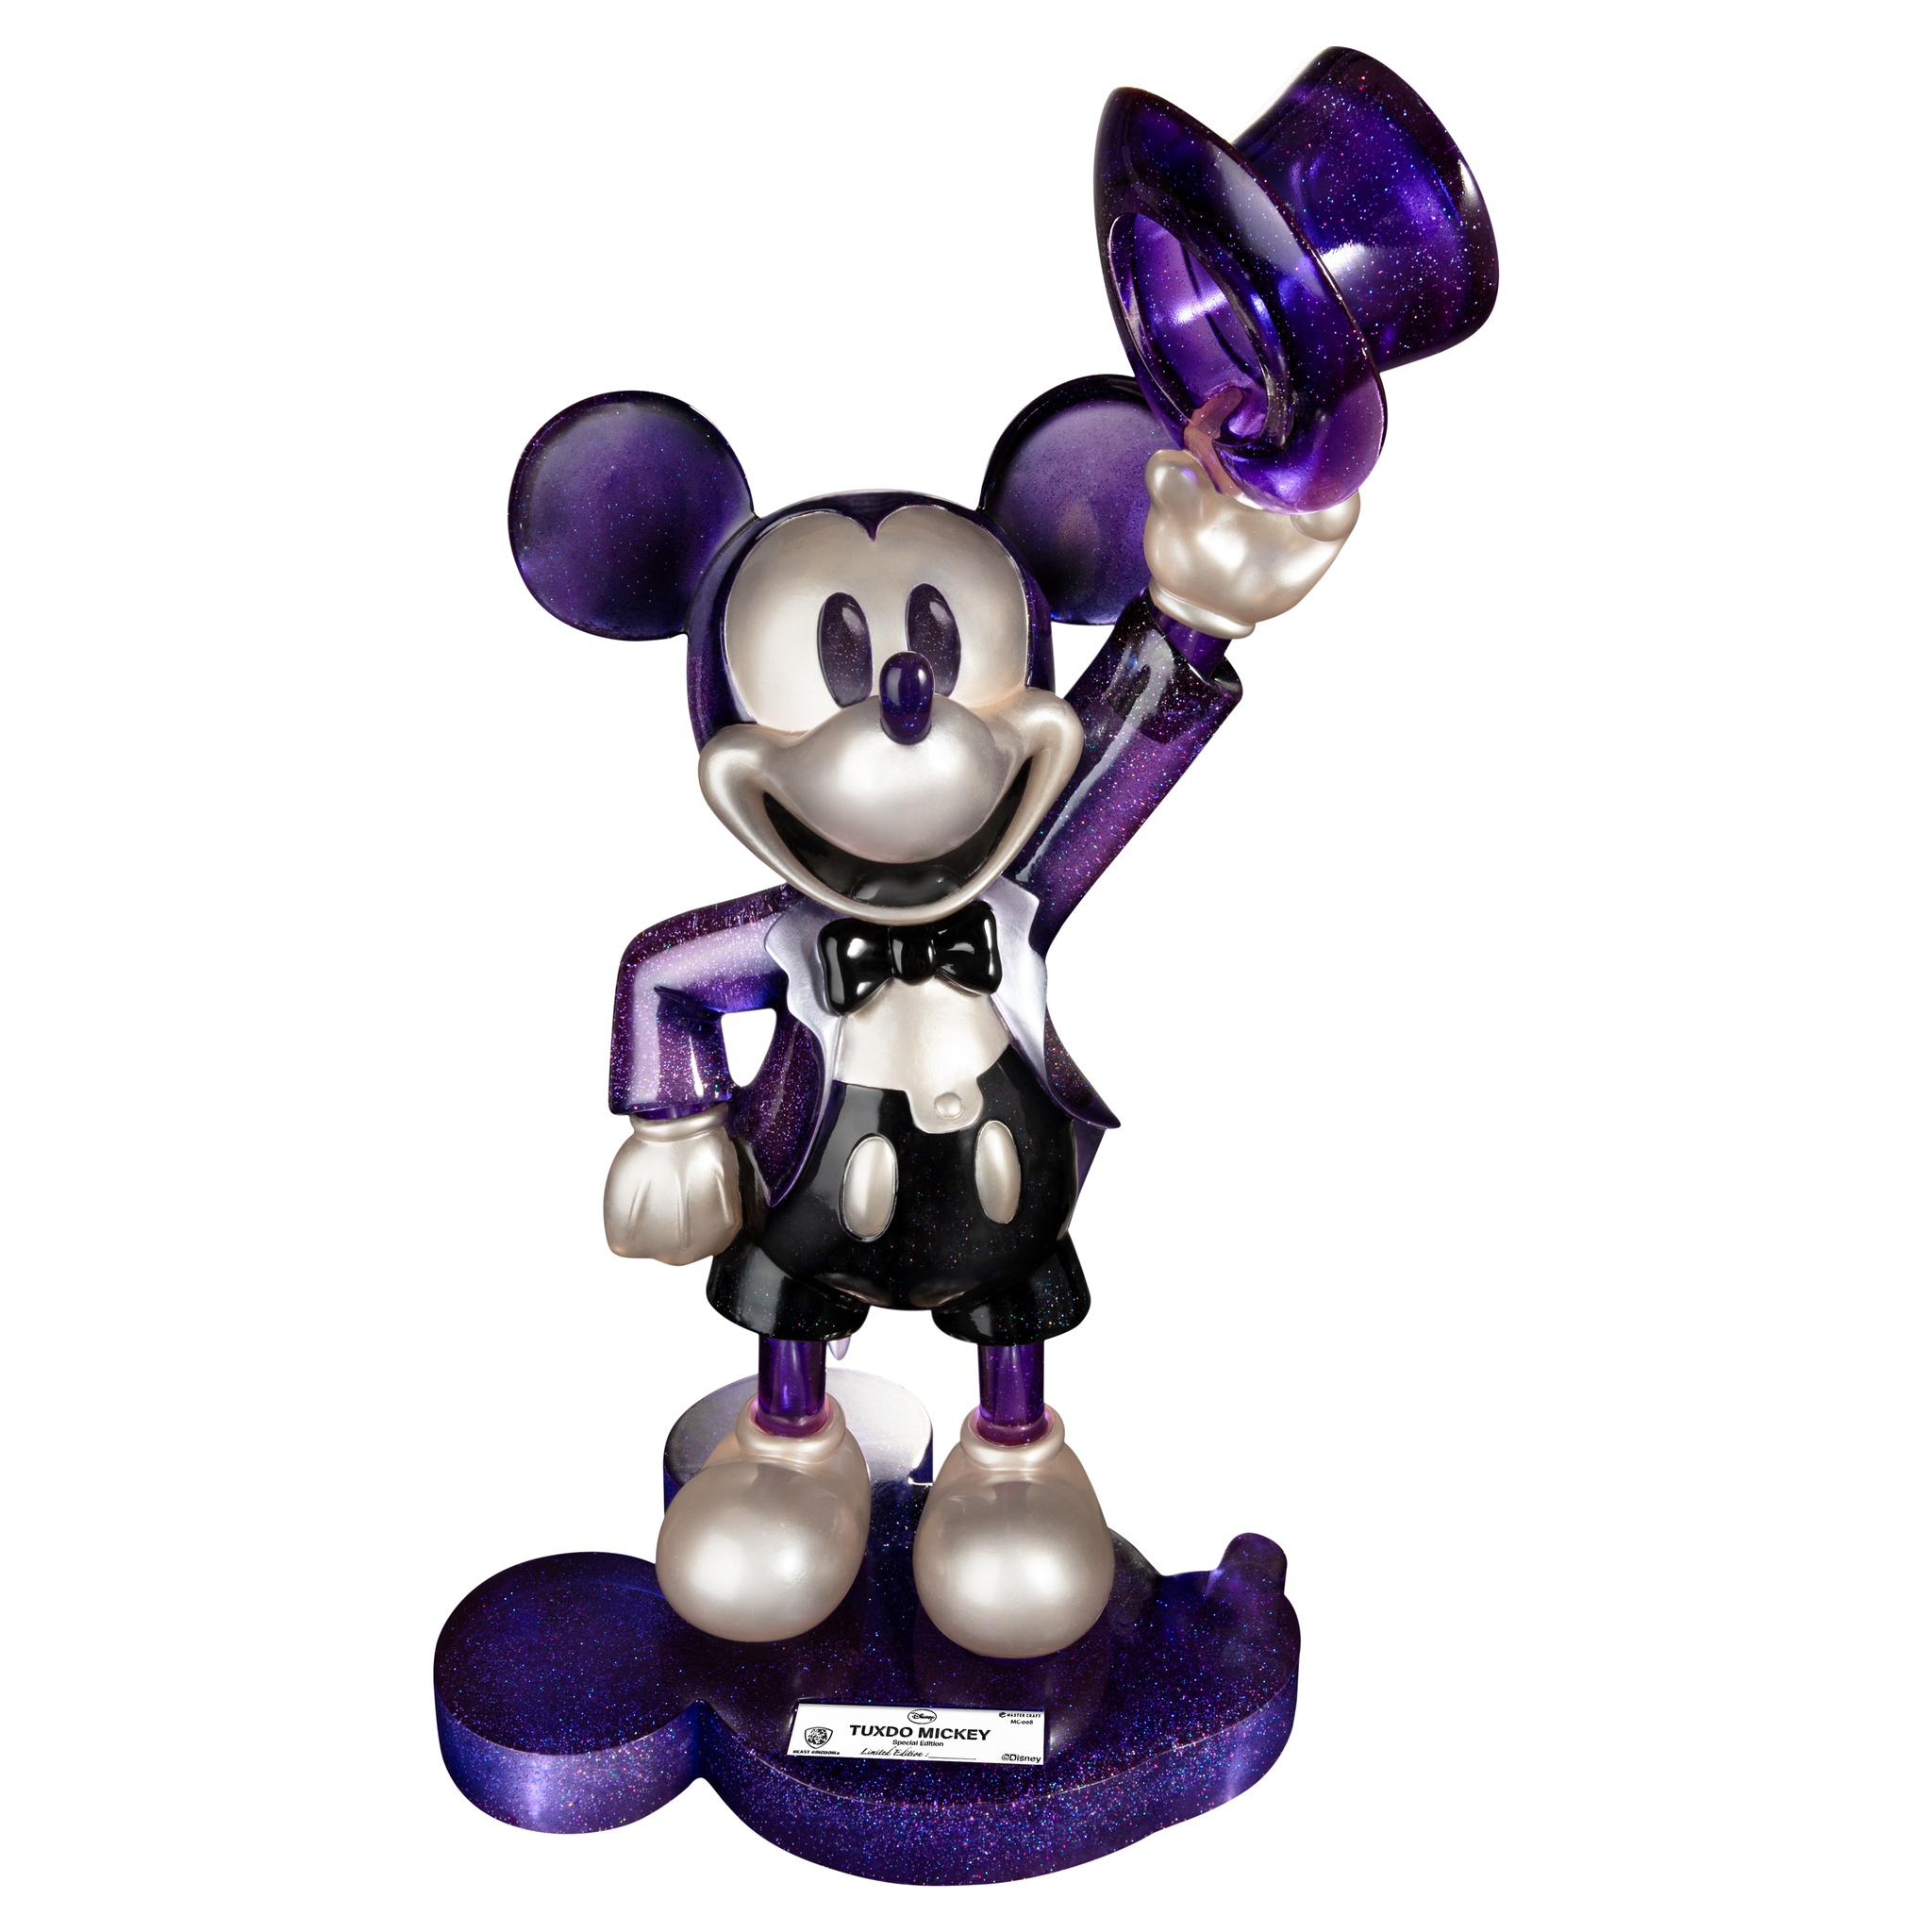 Disney Medium Figure - Sorcerer Mickey Mouse Light-Up Figure